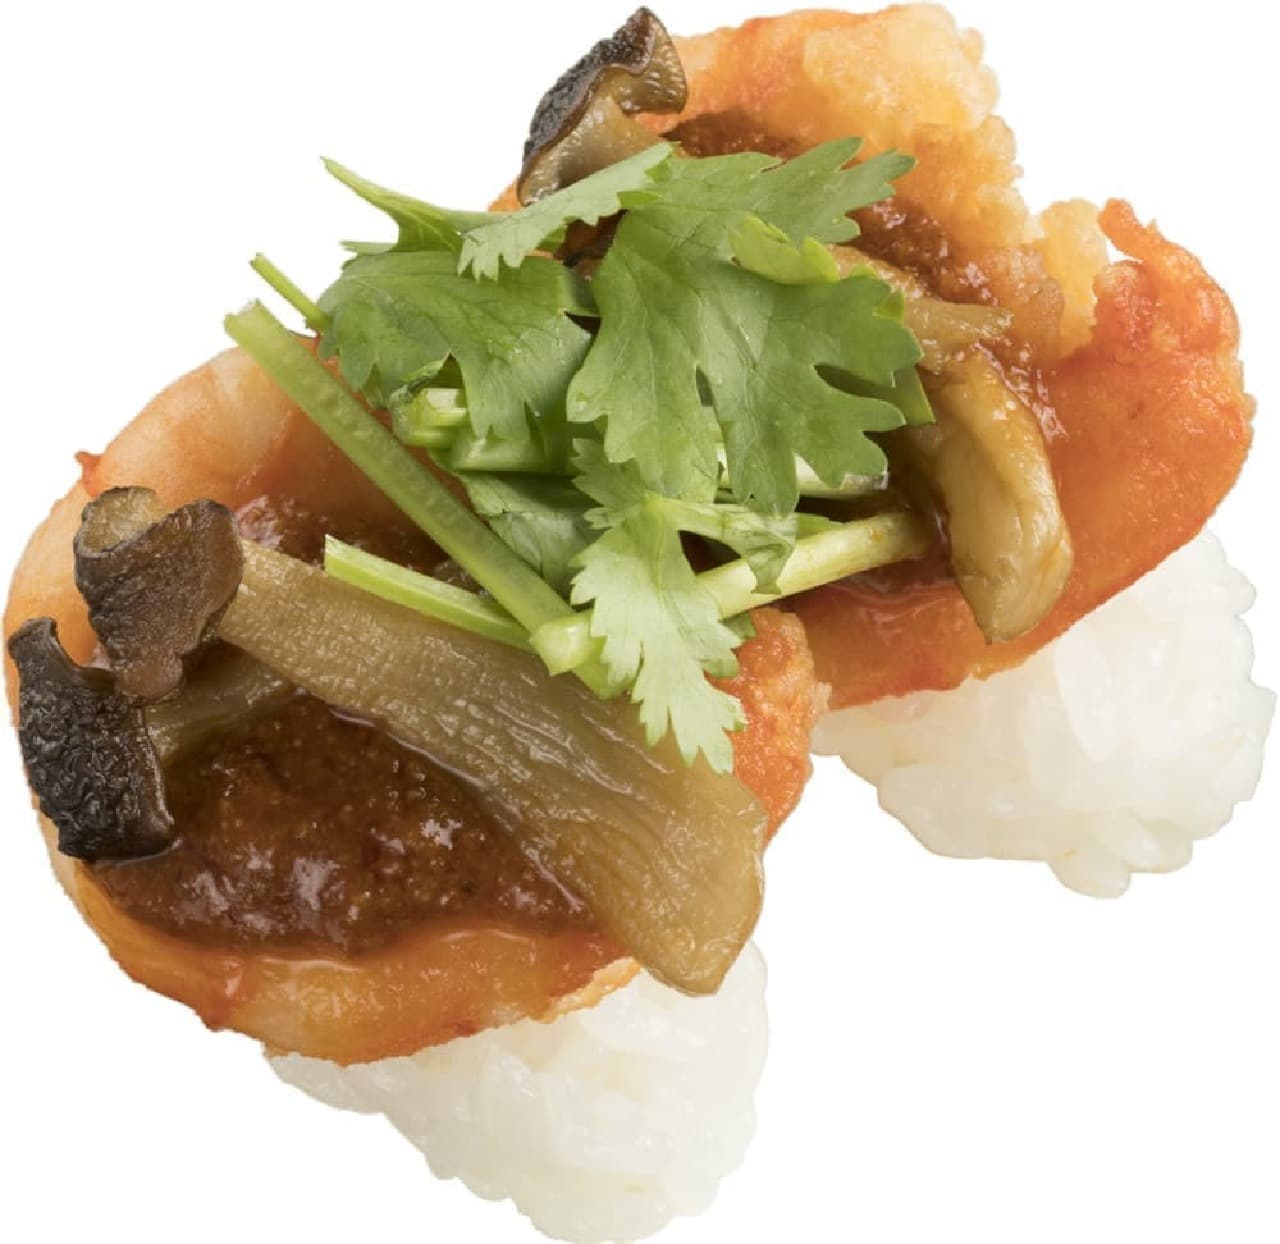 Sushiro "Tom Yum Kung Sushi to Eat Spicy"